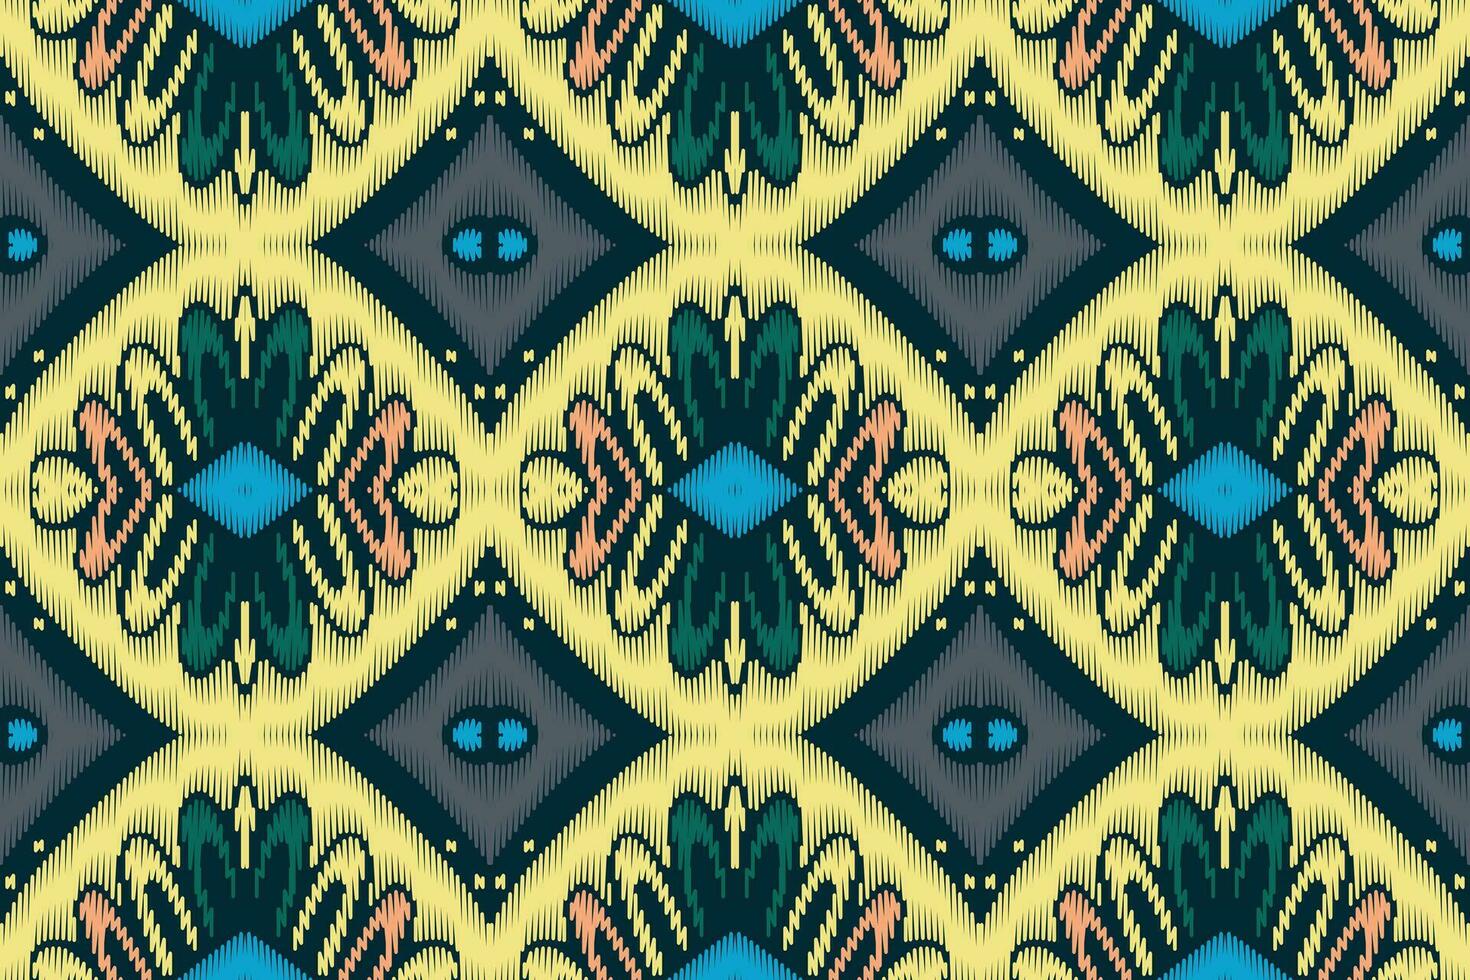 ikat bloemen paisley borduurwerk Aan wit achtergrond.geometrisch etnisch oosters patroon traditioneel.azteken stijl abstract vector illustratie.ontwerp voor textuur, stof, kleding, verpakking, decoratie, sarong.